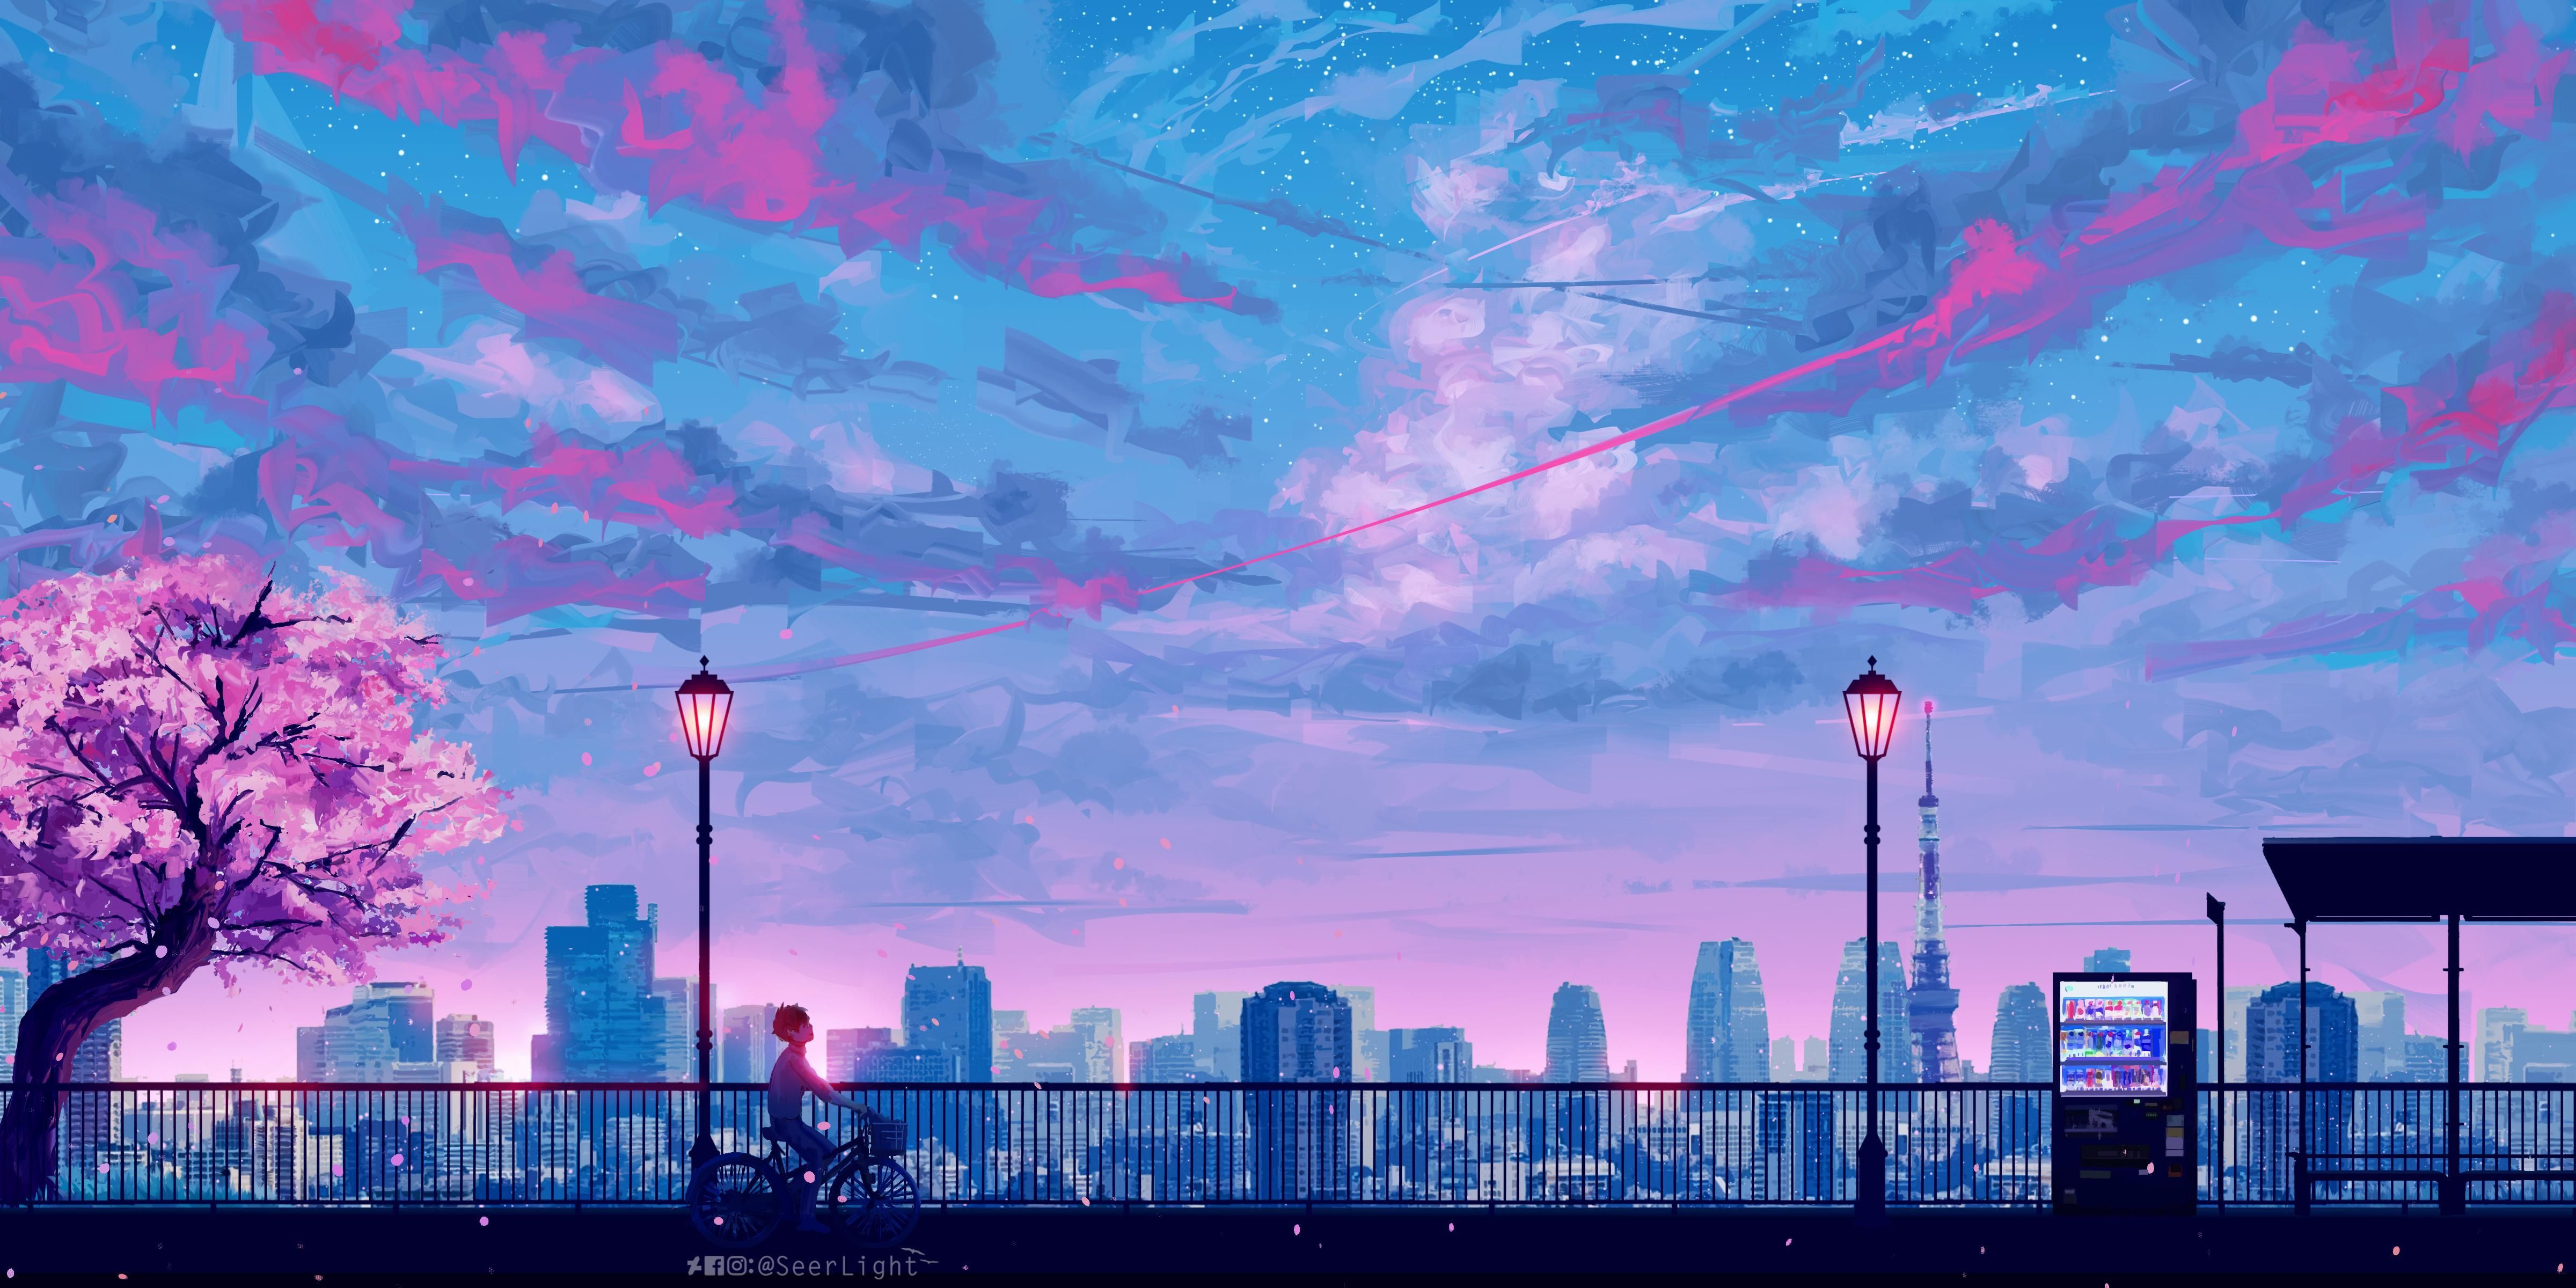 Aesthetic Anime Wallpaper. Aesthetic desktop wallpaper, Anime scenery wallpaper, Scenery wallpaper